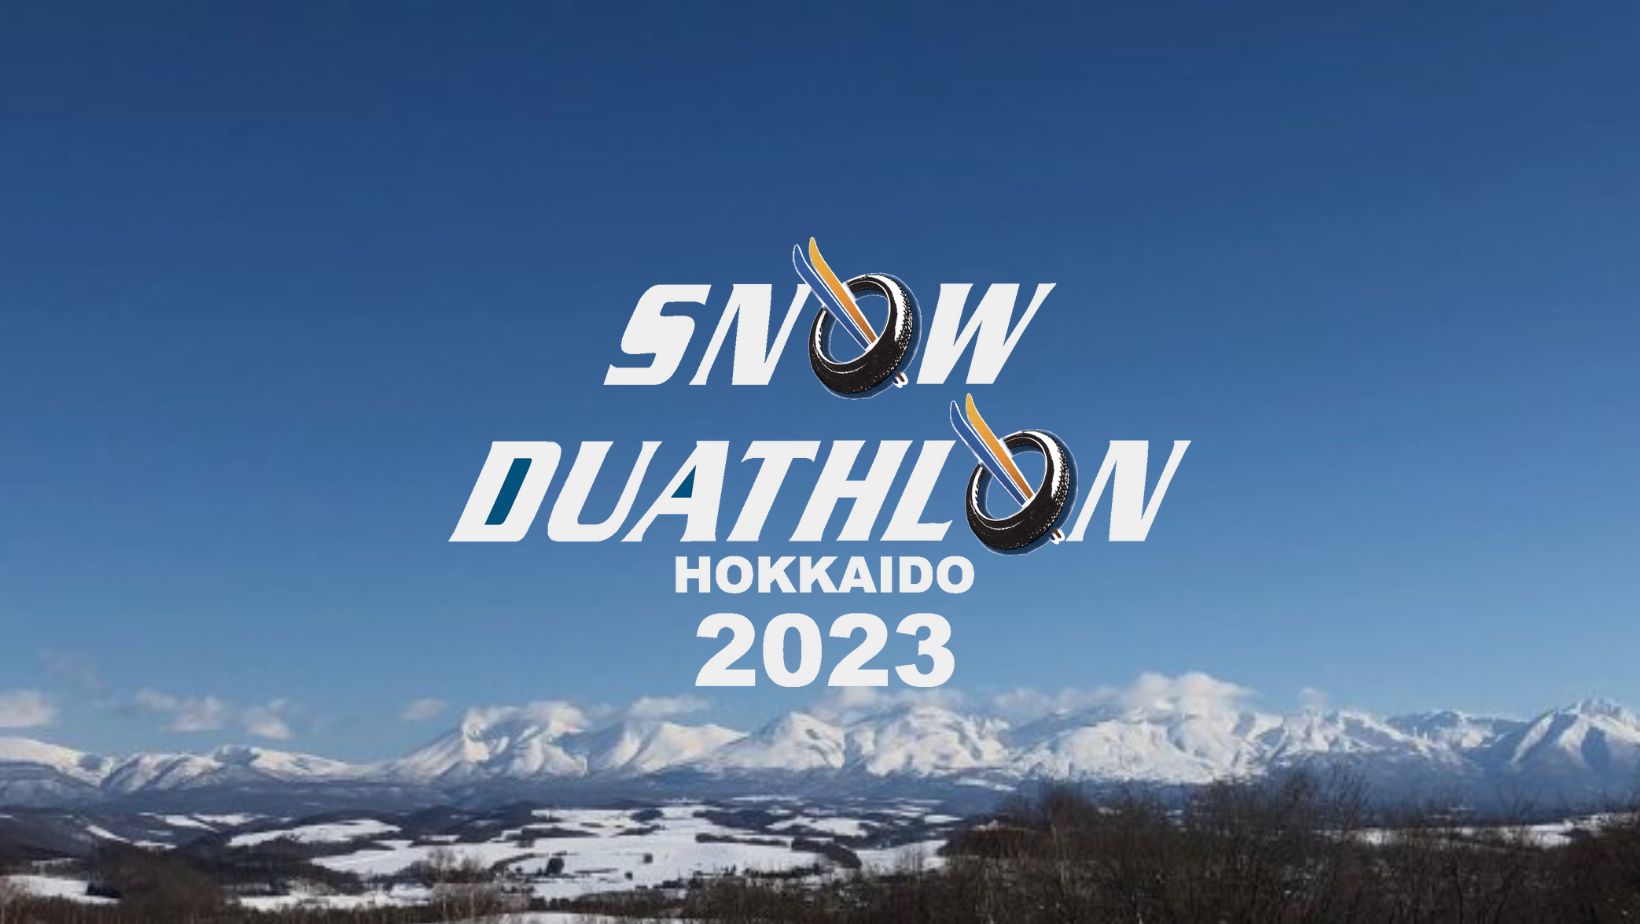 スノーデュアスロン北海道2023